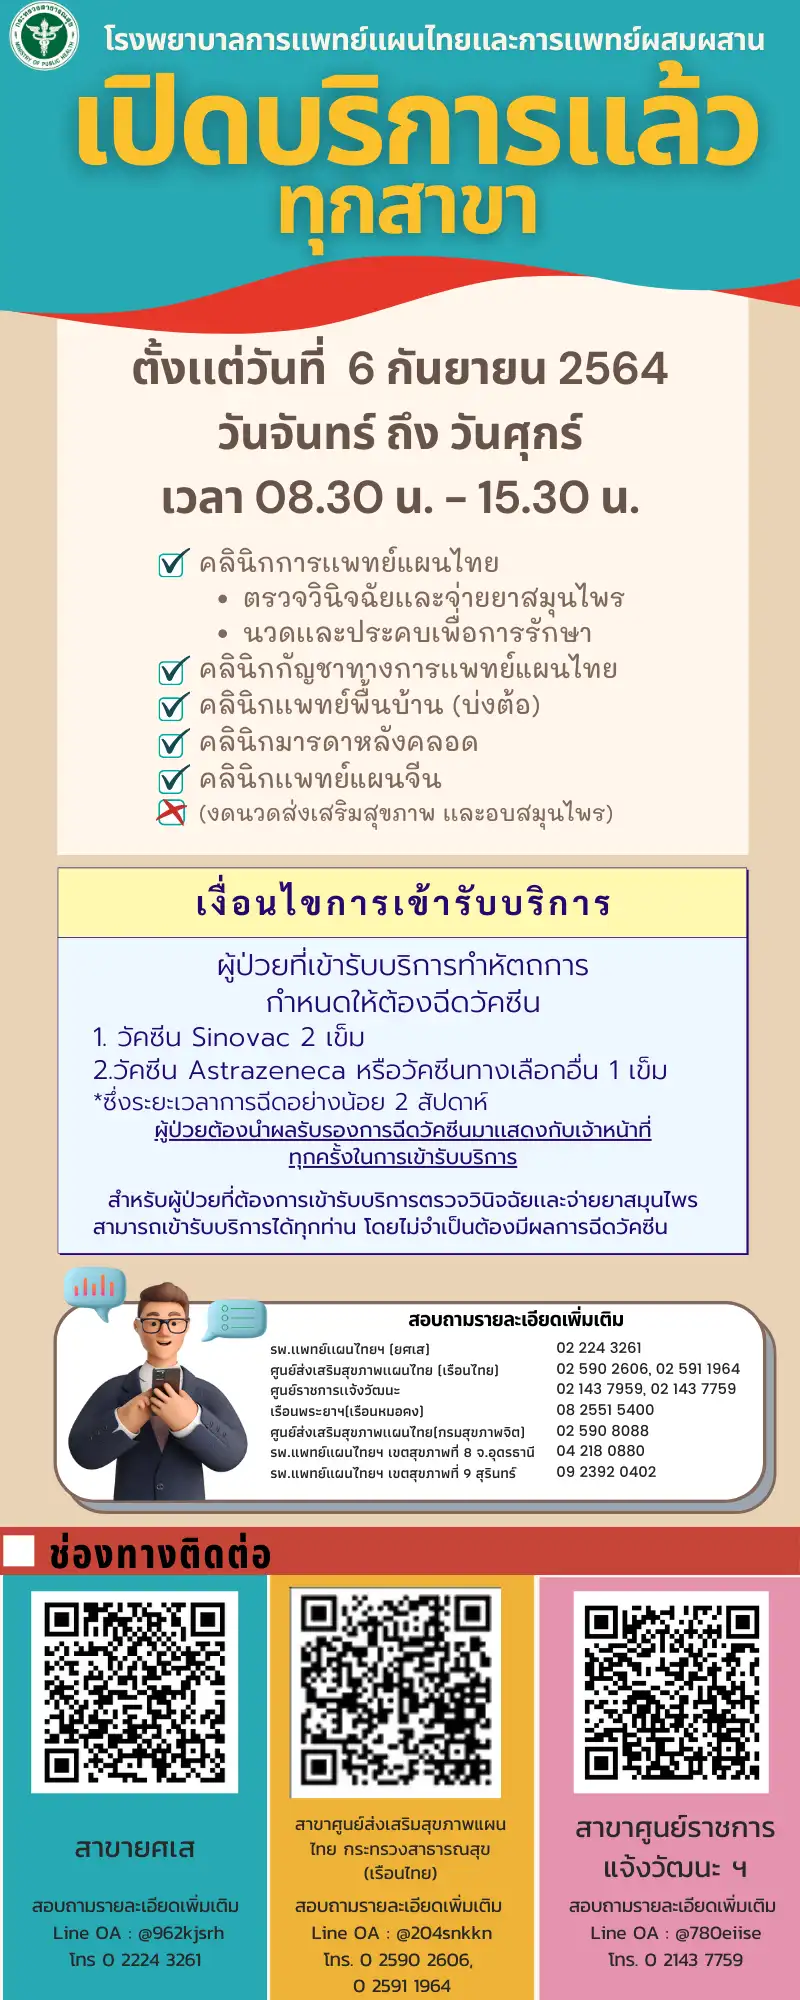  รพ.การแพทย์แผนไทยฯ ทุกสาขา ตั้งแต่วันที่ 6 กย 64 (ตามเงื่อนไข) HealthServ